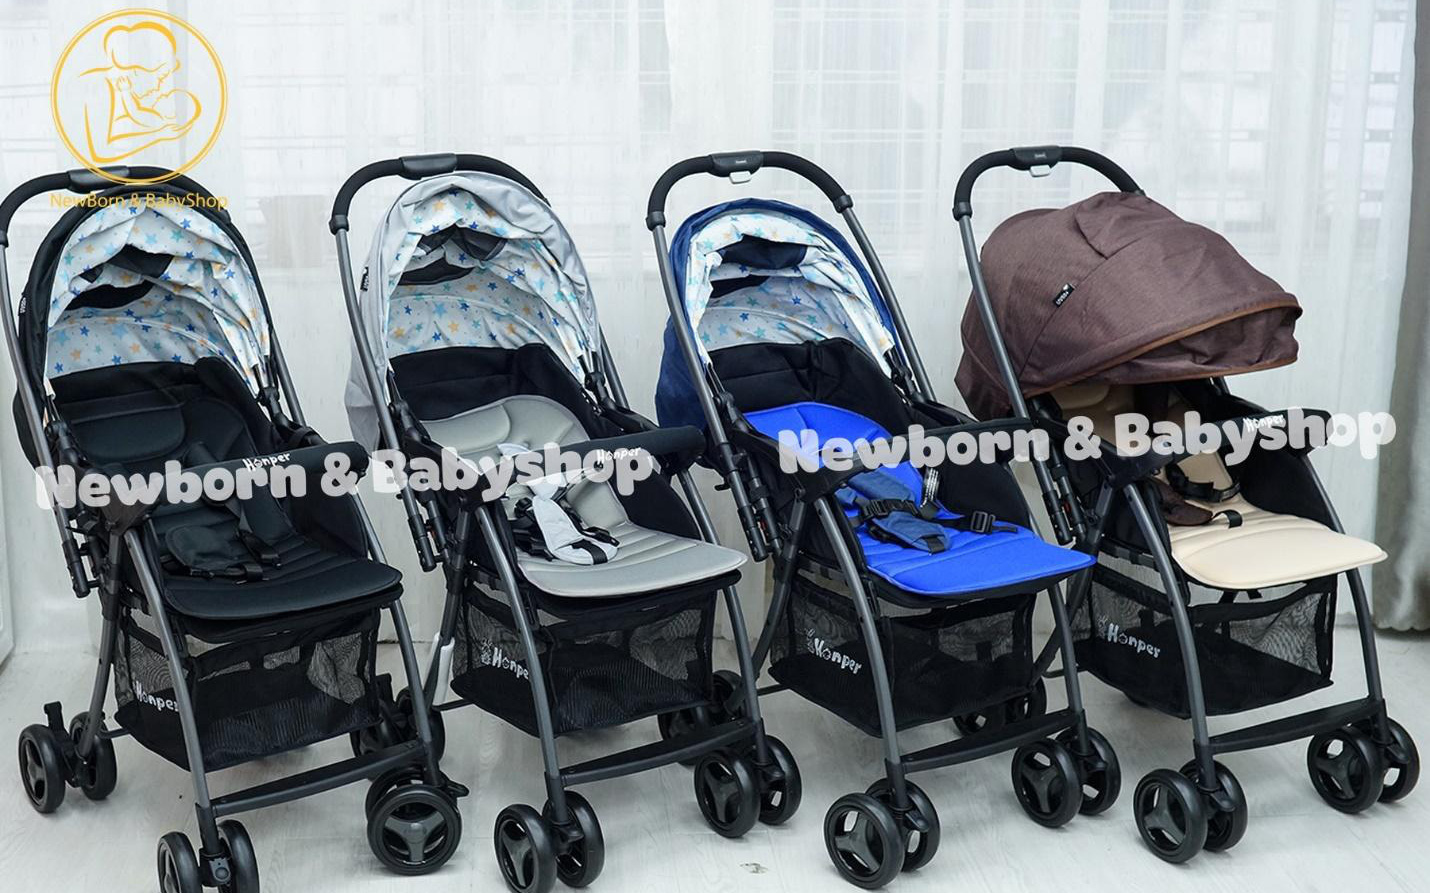 Newborn & Baby Shop gợi ý cách lựa chọn quần áo cho trẻ sơ sinh